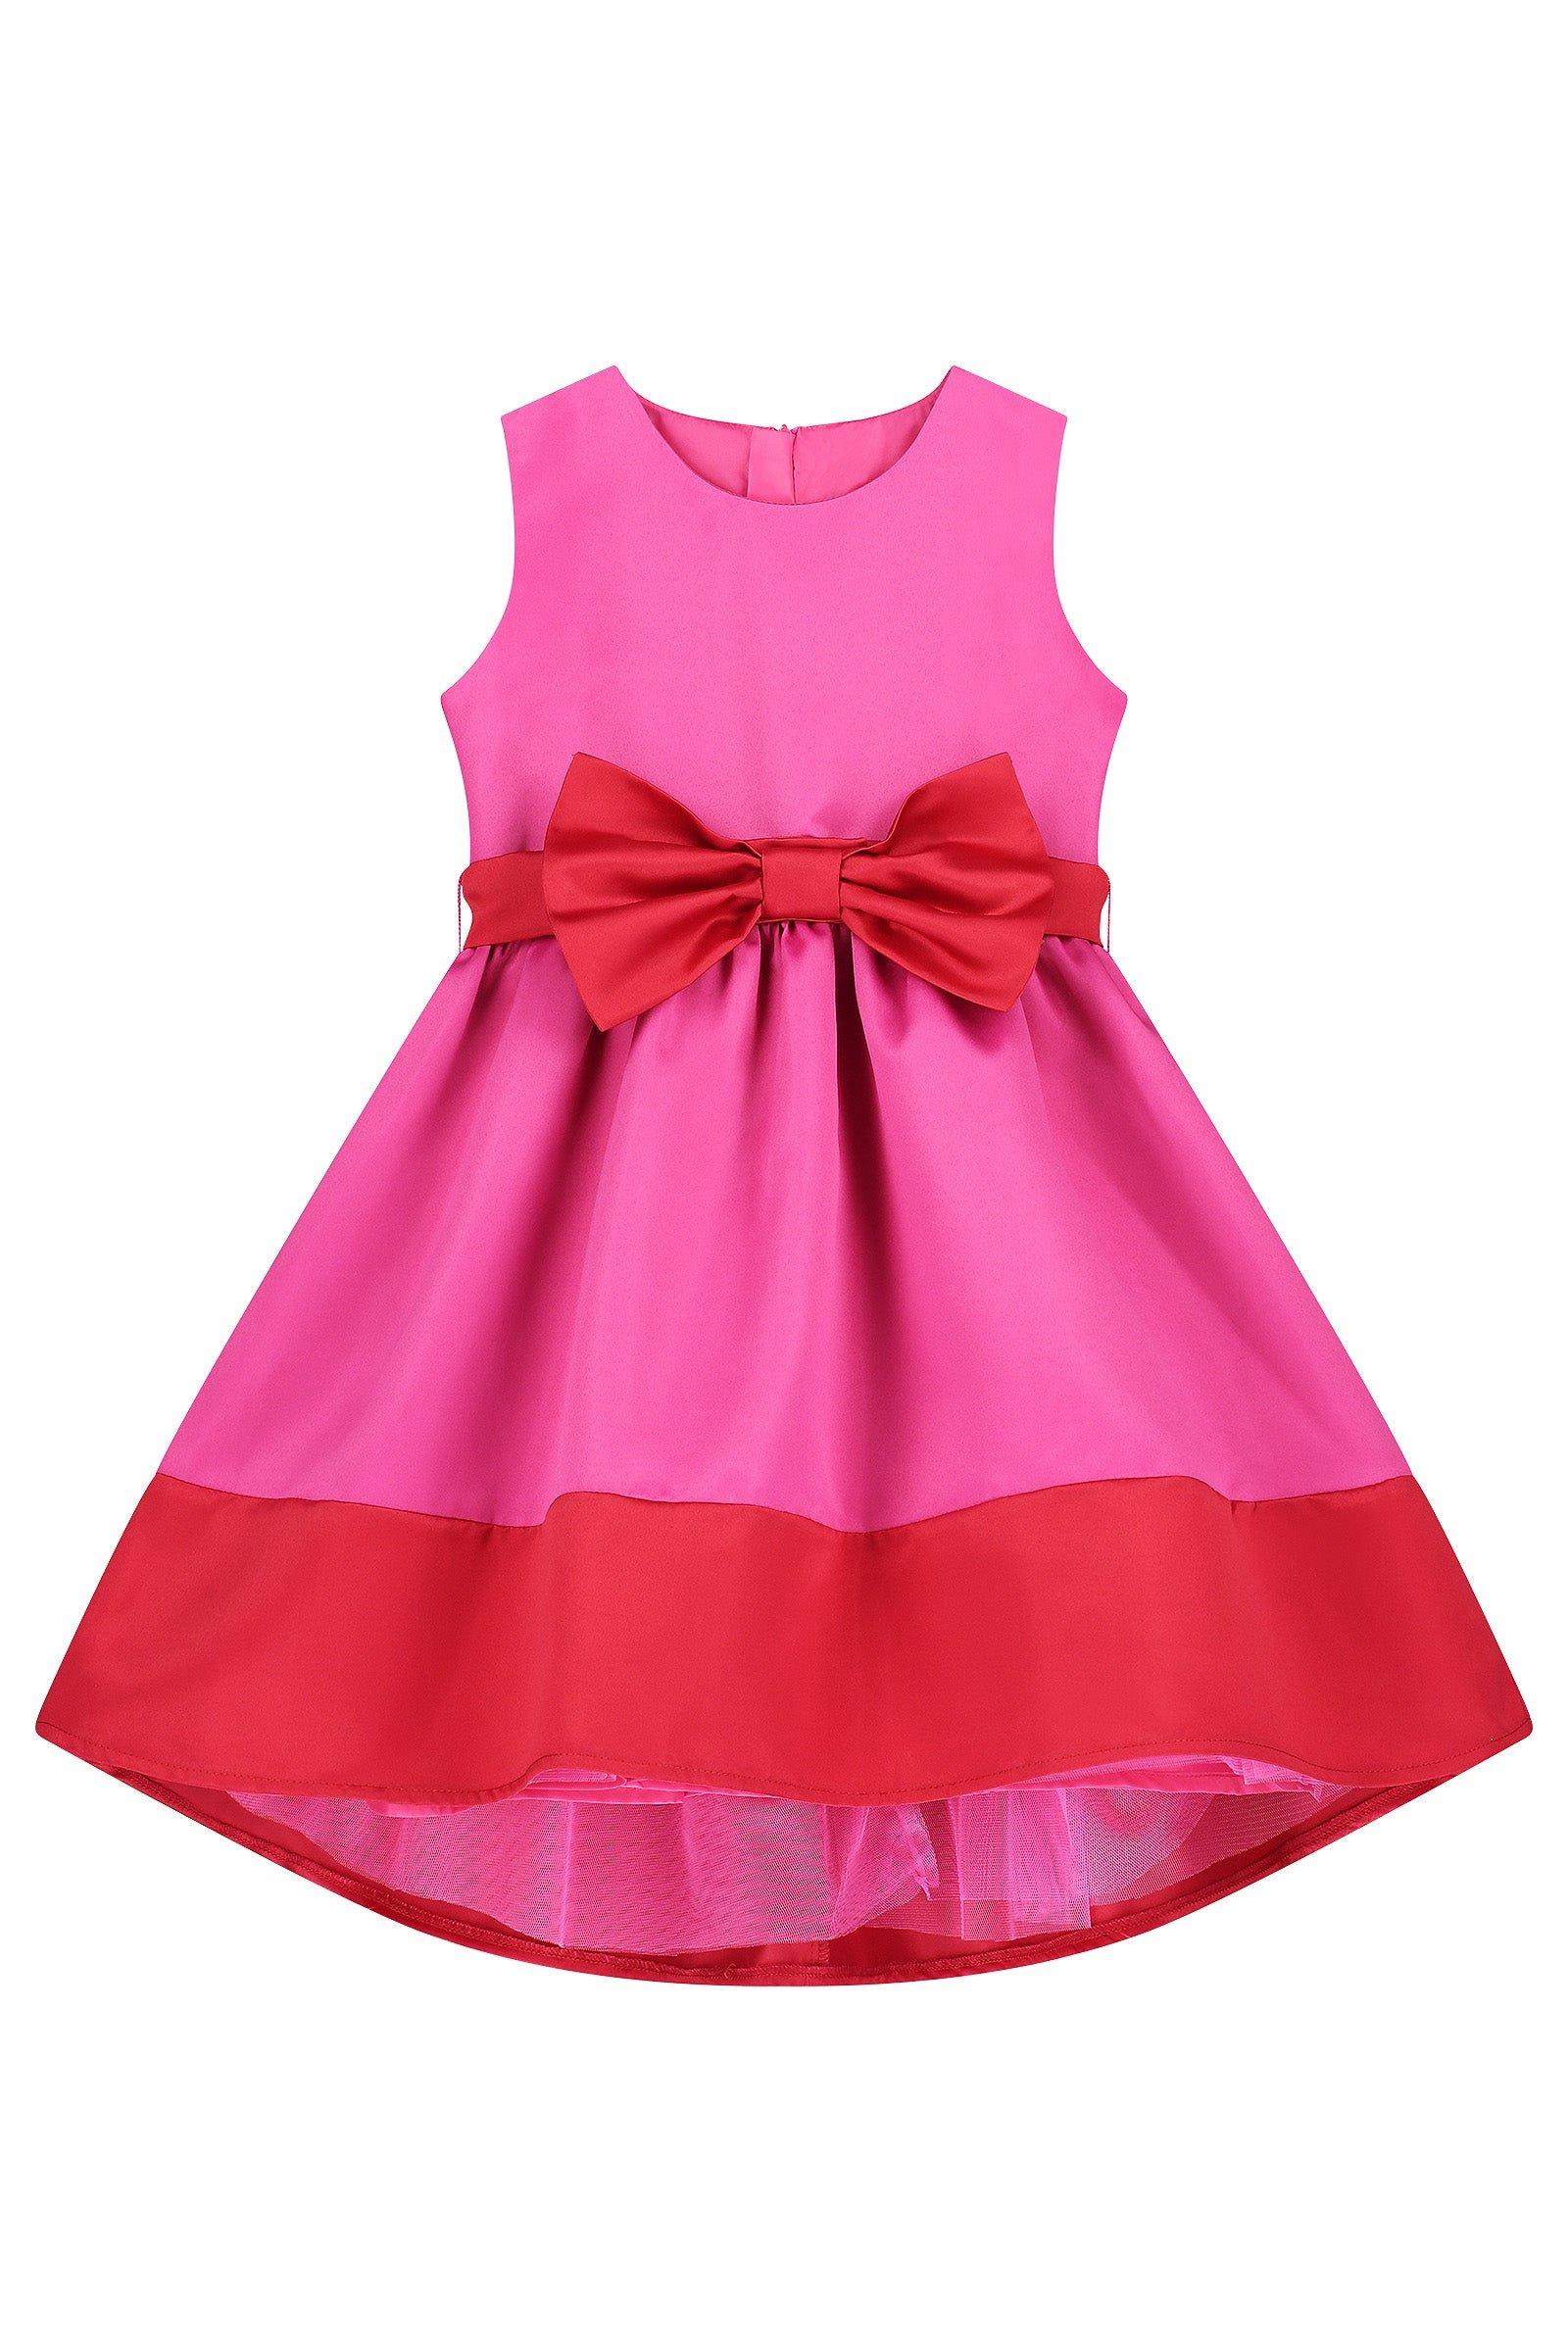 Атласное вечернее платье с бантом Florence HOLLY HASTIE, розовый платье ascool оливковое с бантом 44 размер новое